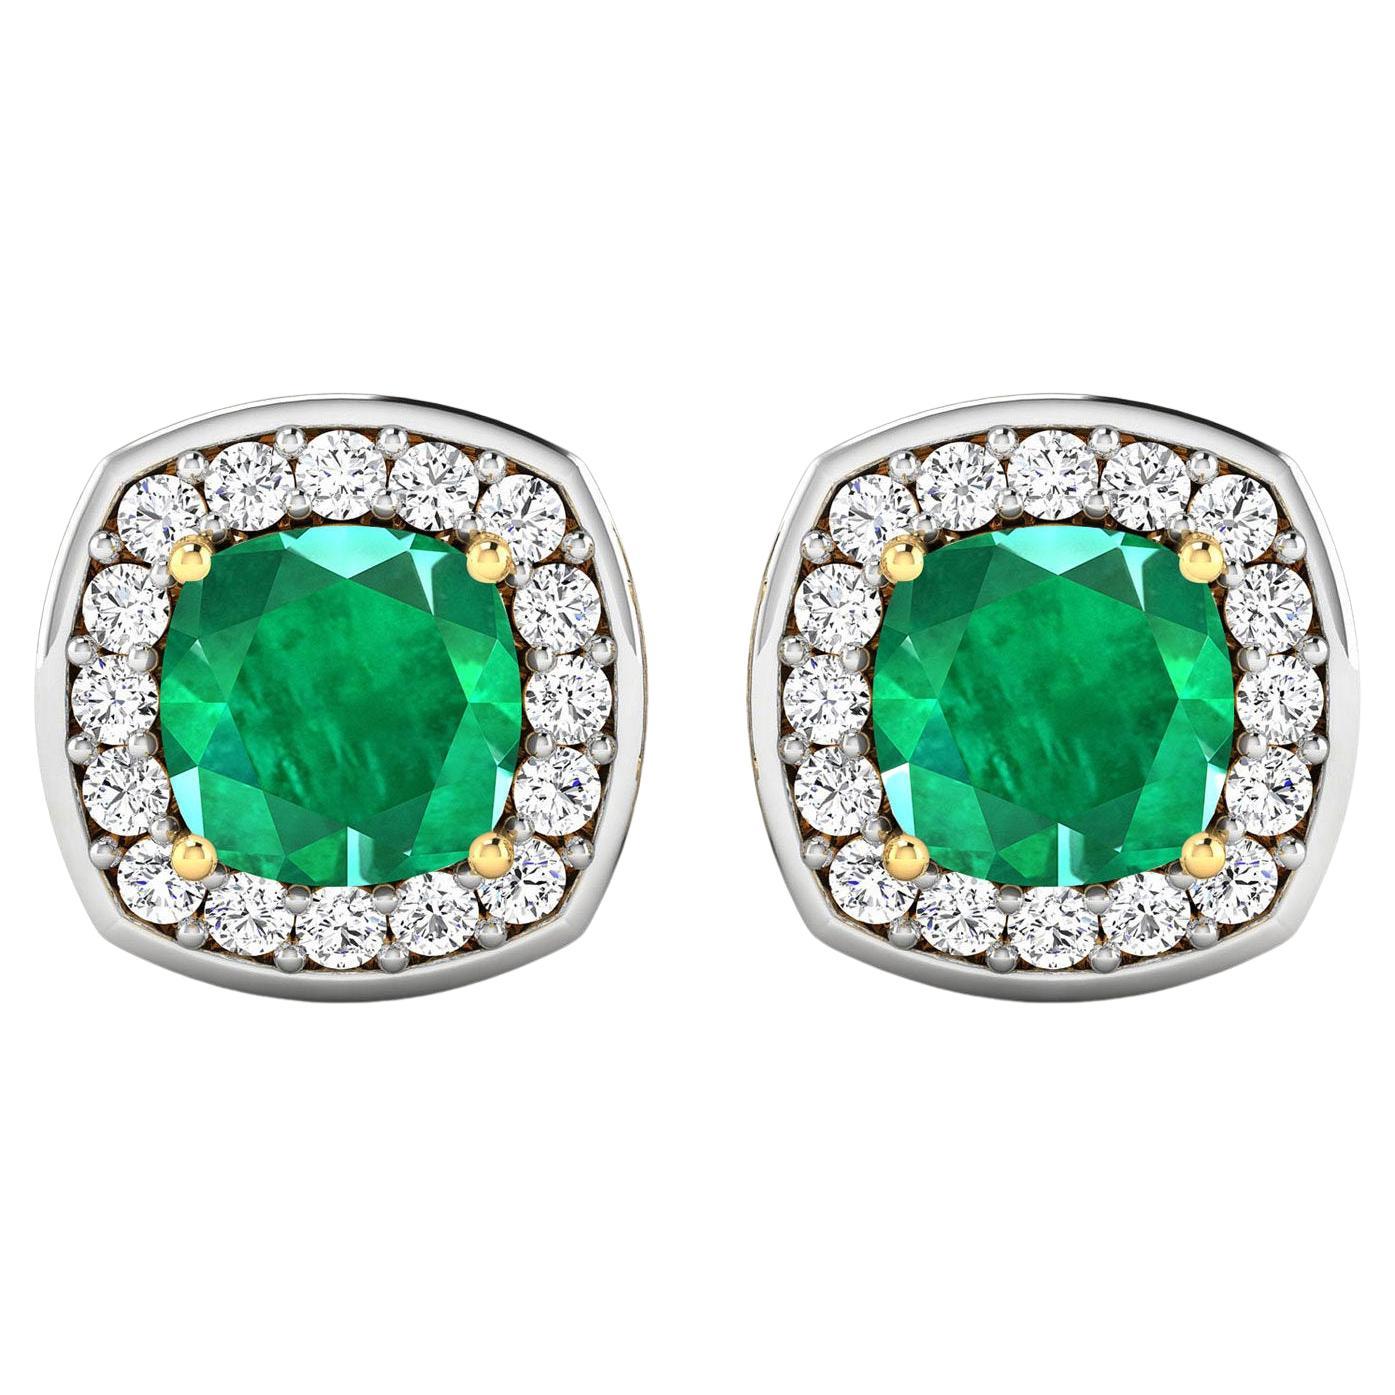 Natural Zambian Emerald & Diamond Earrings Total 2.25 Carats 14k Yellow Gold